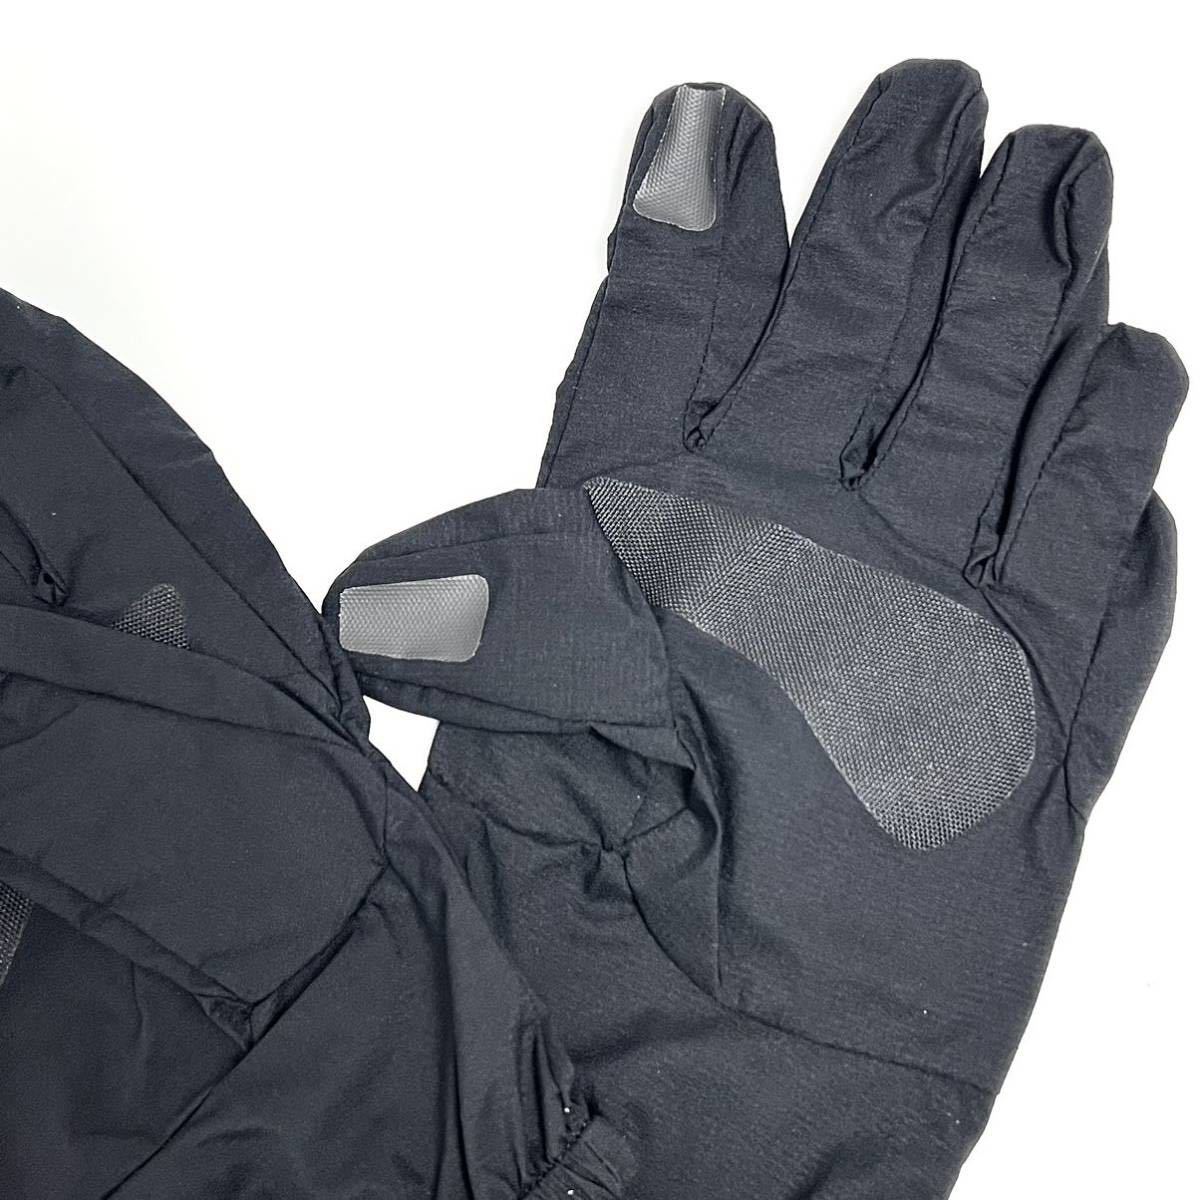 M 新品 ノースフェイス L1 プラス シェル グローブ L1+ Shell Glove 黒 ブラック 防水 ハイベント 使用 手袋 レイン レイヤリング 雨